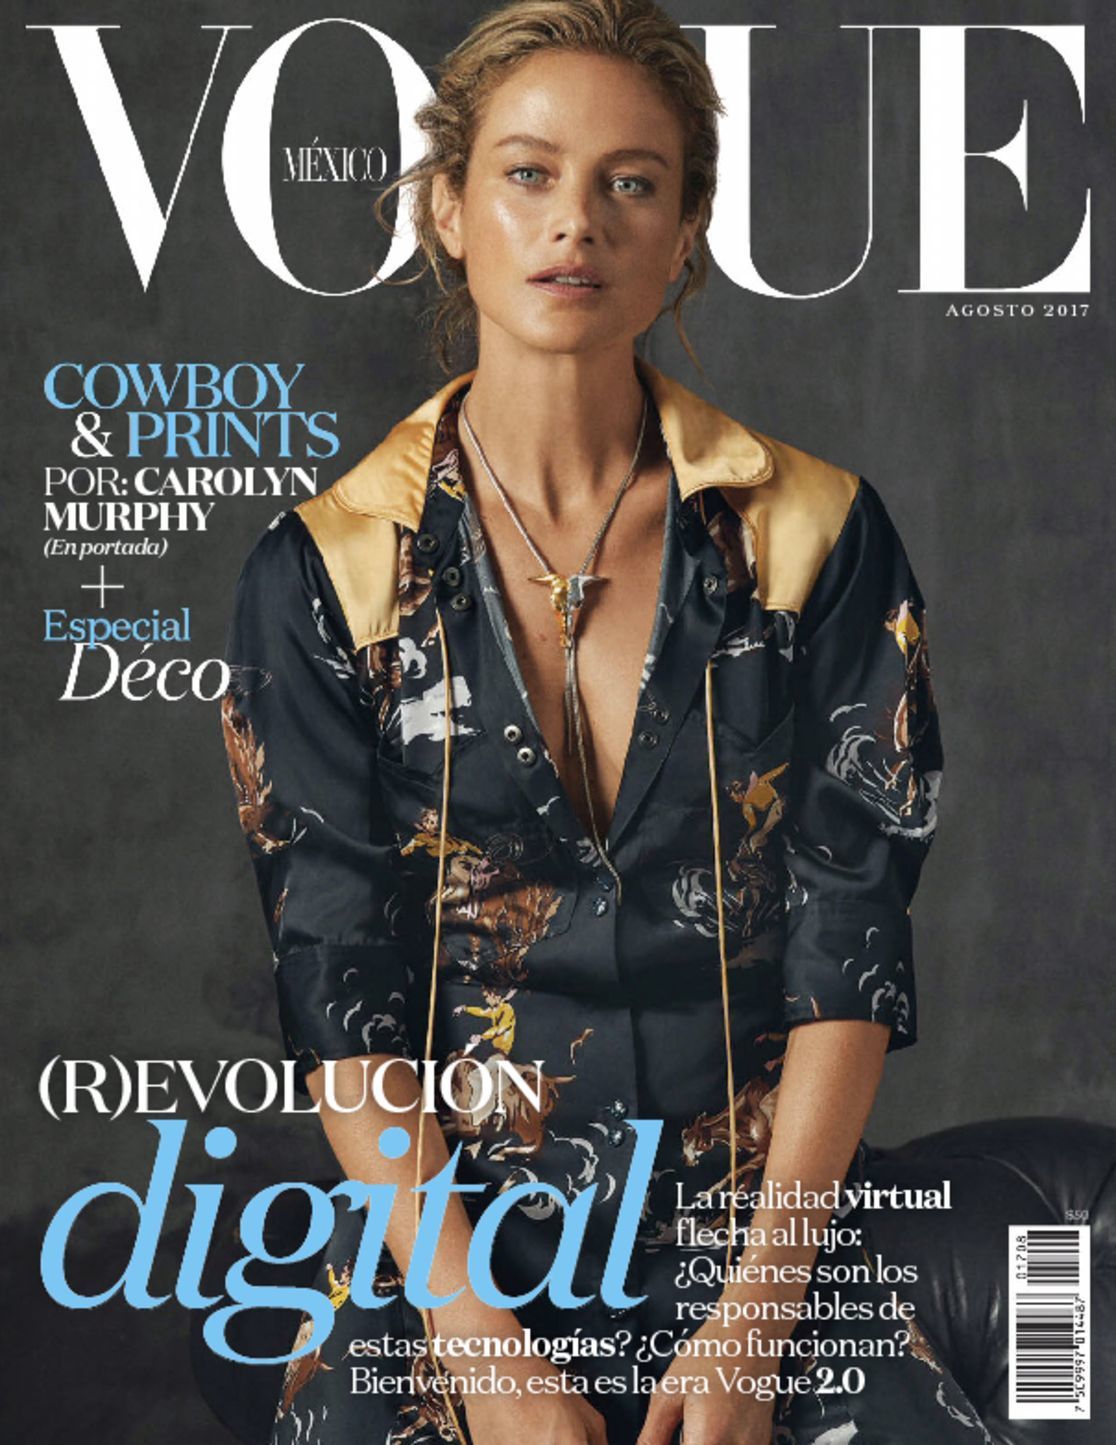 Vogue Mexico Magazine (Digital) - DiscountMags.com